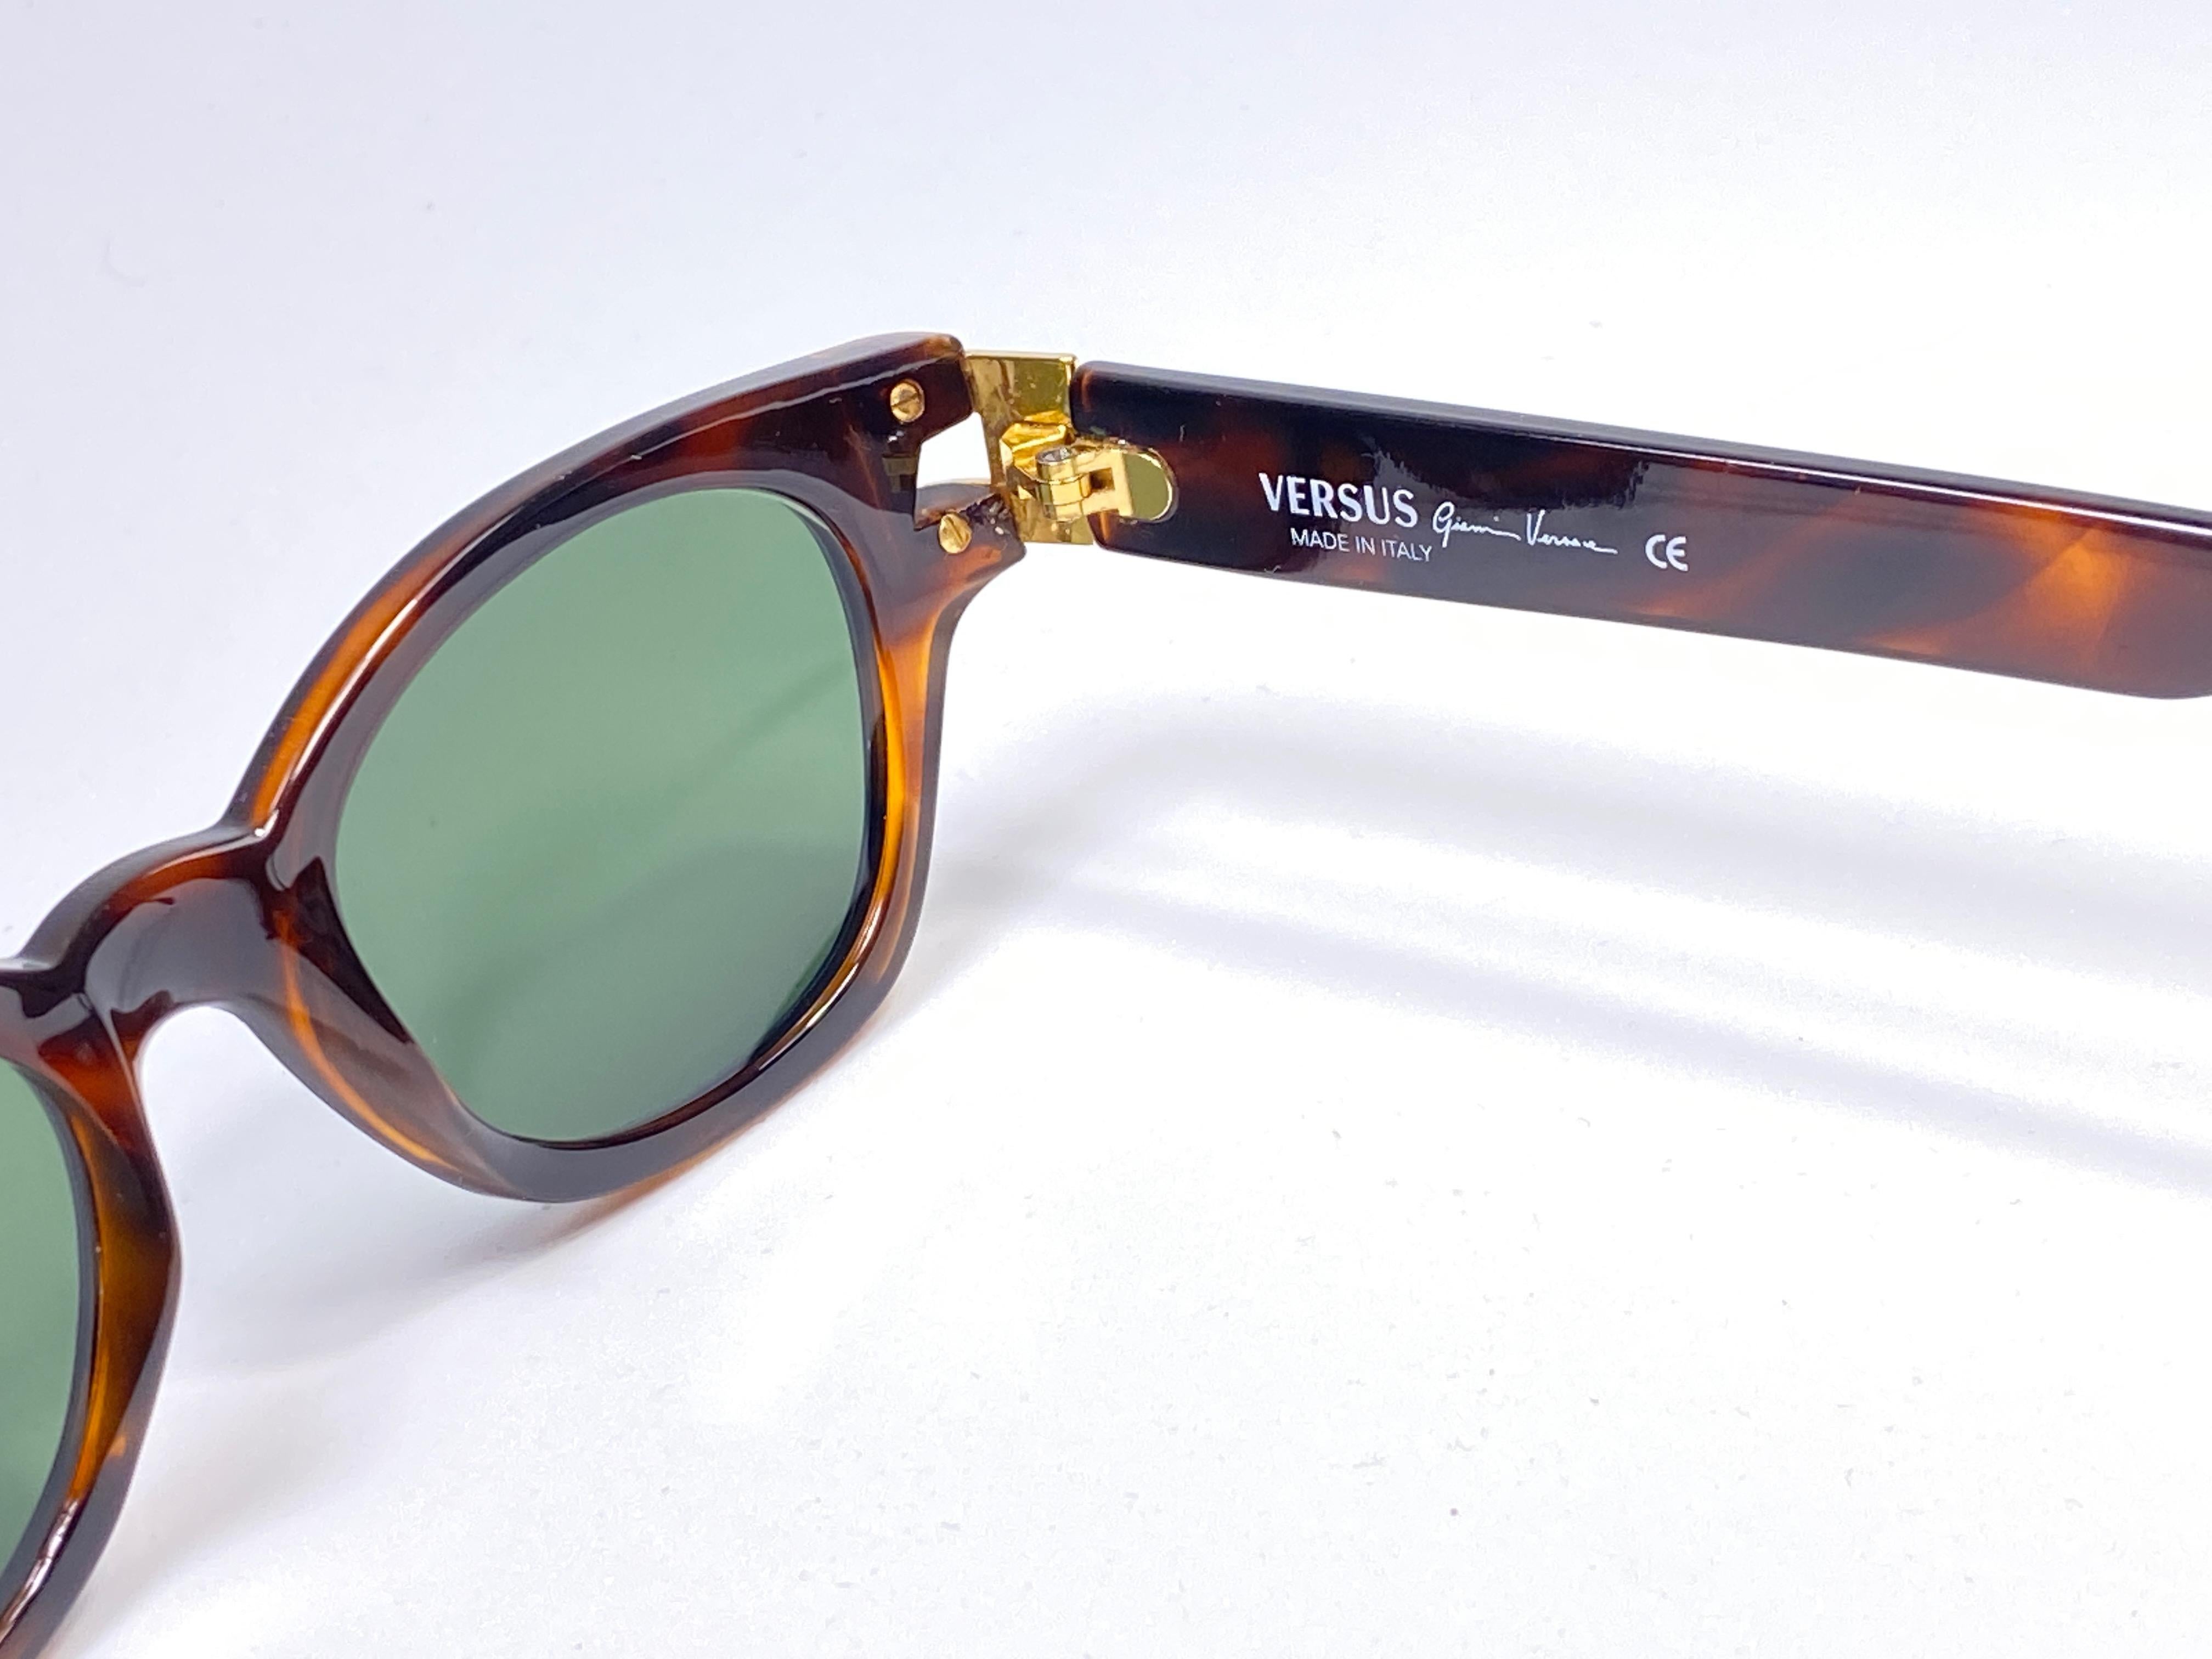 versus sunglasses made in italy